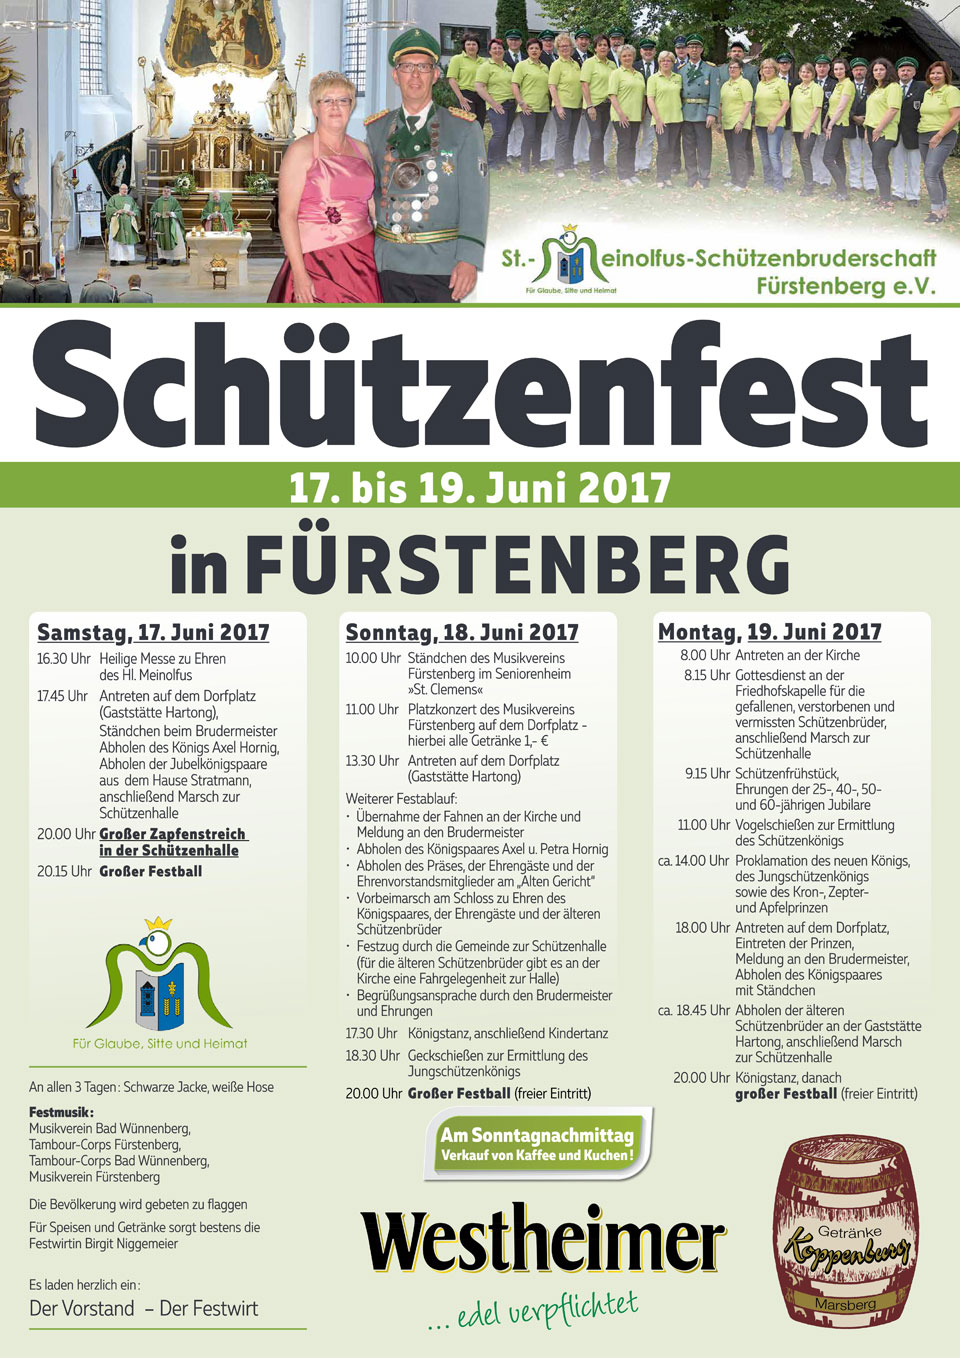 Plakat-Schtzenfest-2017.jpg - 326,44 kB